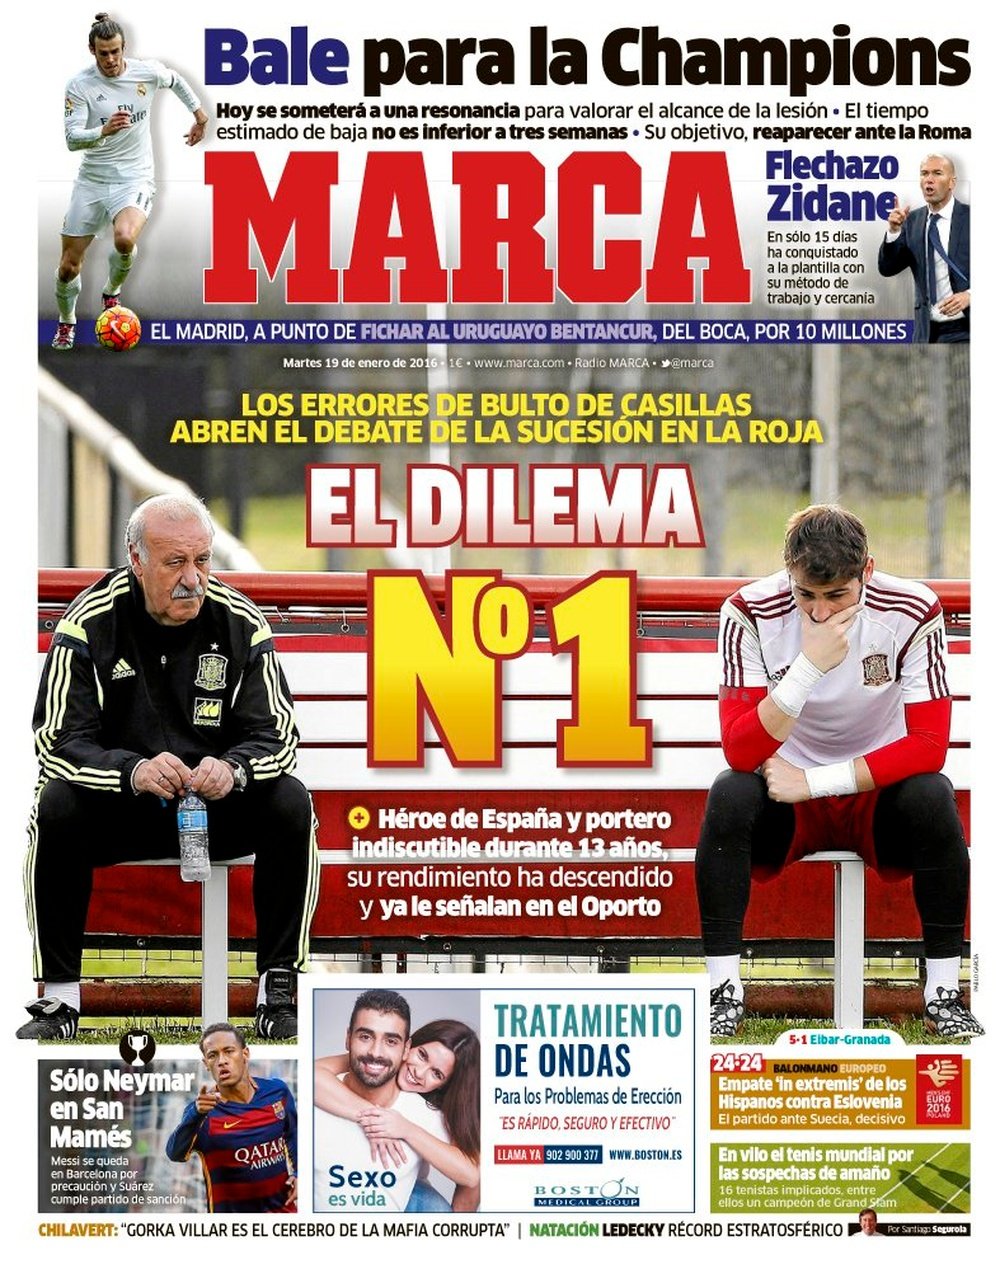 La Une du quotidien sportif Marca 19-01-16